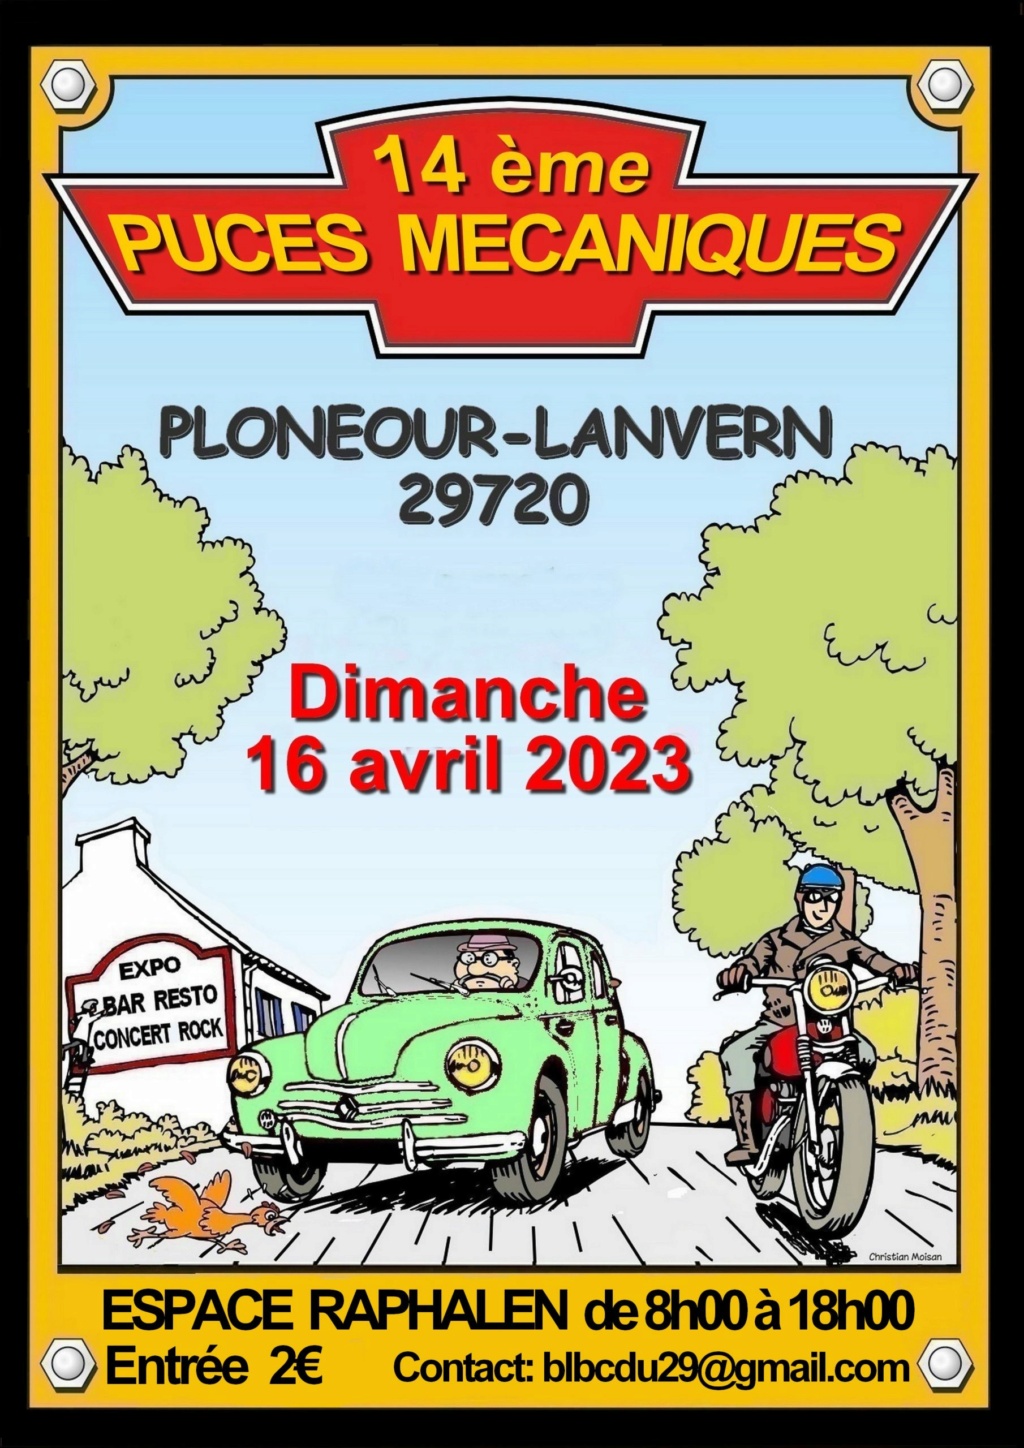 MANIFESTATION - 14ème Puces Mécaniques - 16 Avril 2023 - Ploneour - Lanvern (29720) Flyers12